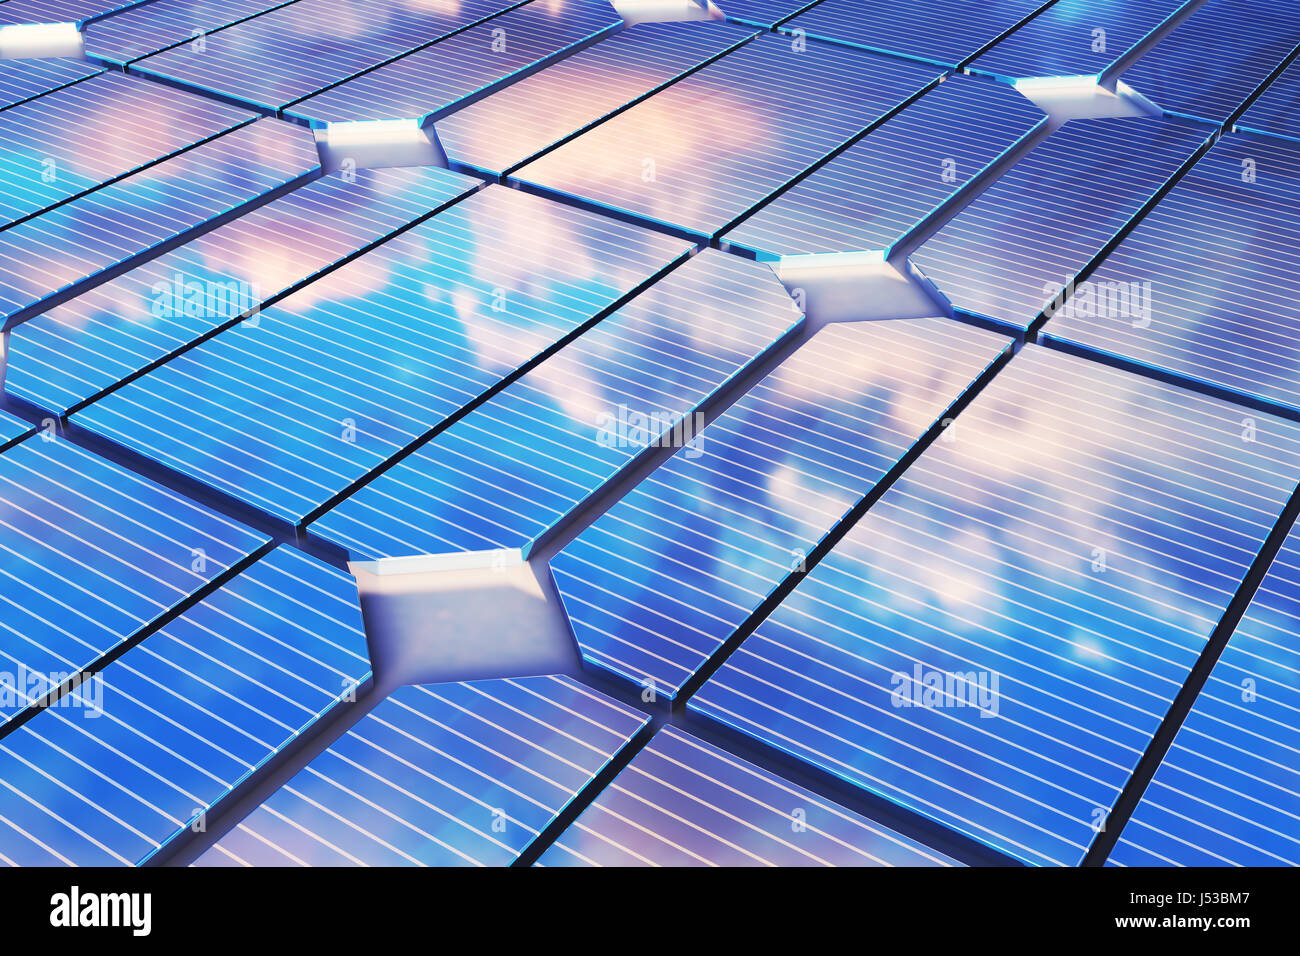 Ilustración 3D reflejo de las nubes sobre las células fotovoltaicas. Los paneles solares de color azul sobre el césped. Concepto alternativa fuente de electricidad. Energía ecológica, energía limpia Foto de stock